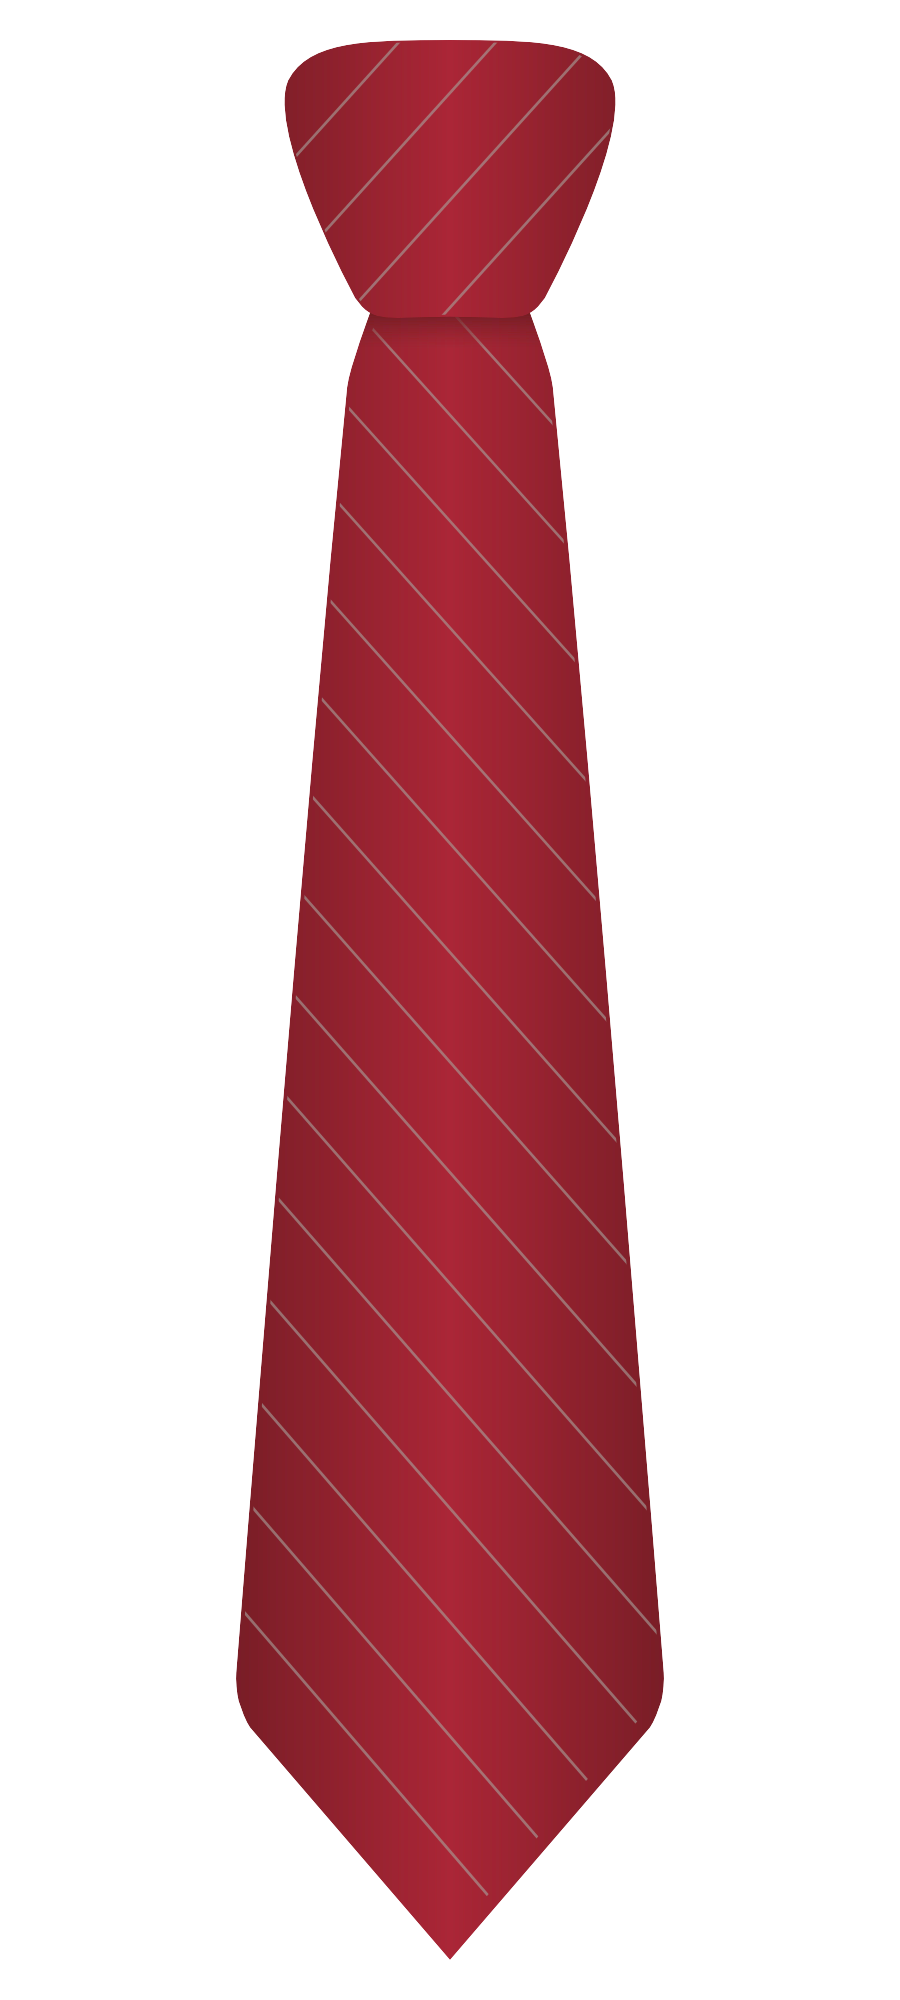 Necktie, Stripe, Striped Tie,